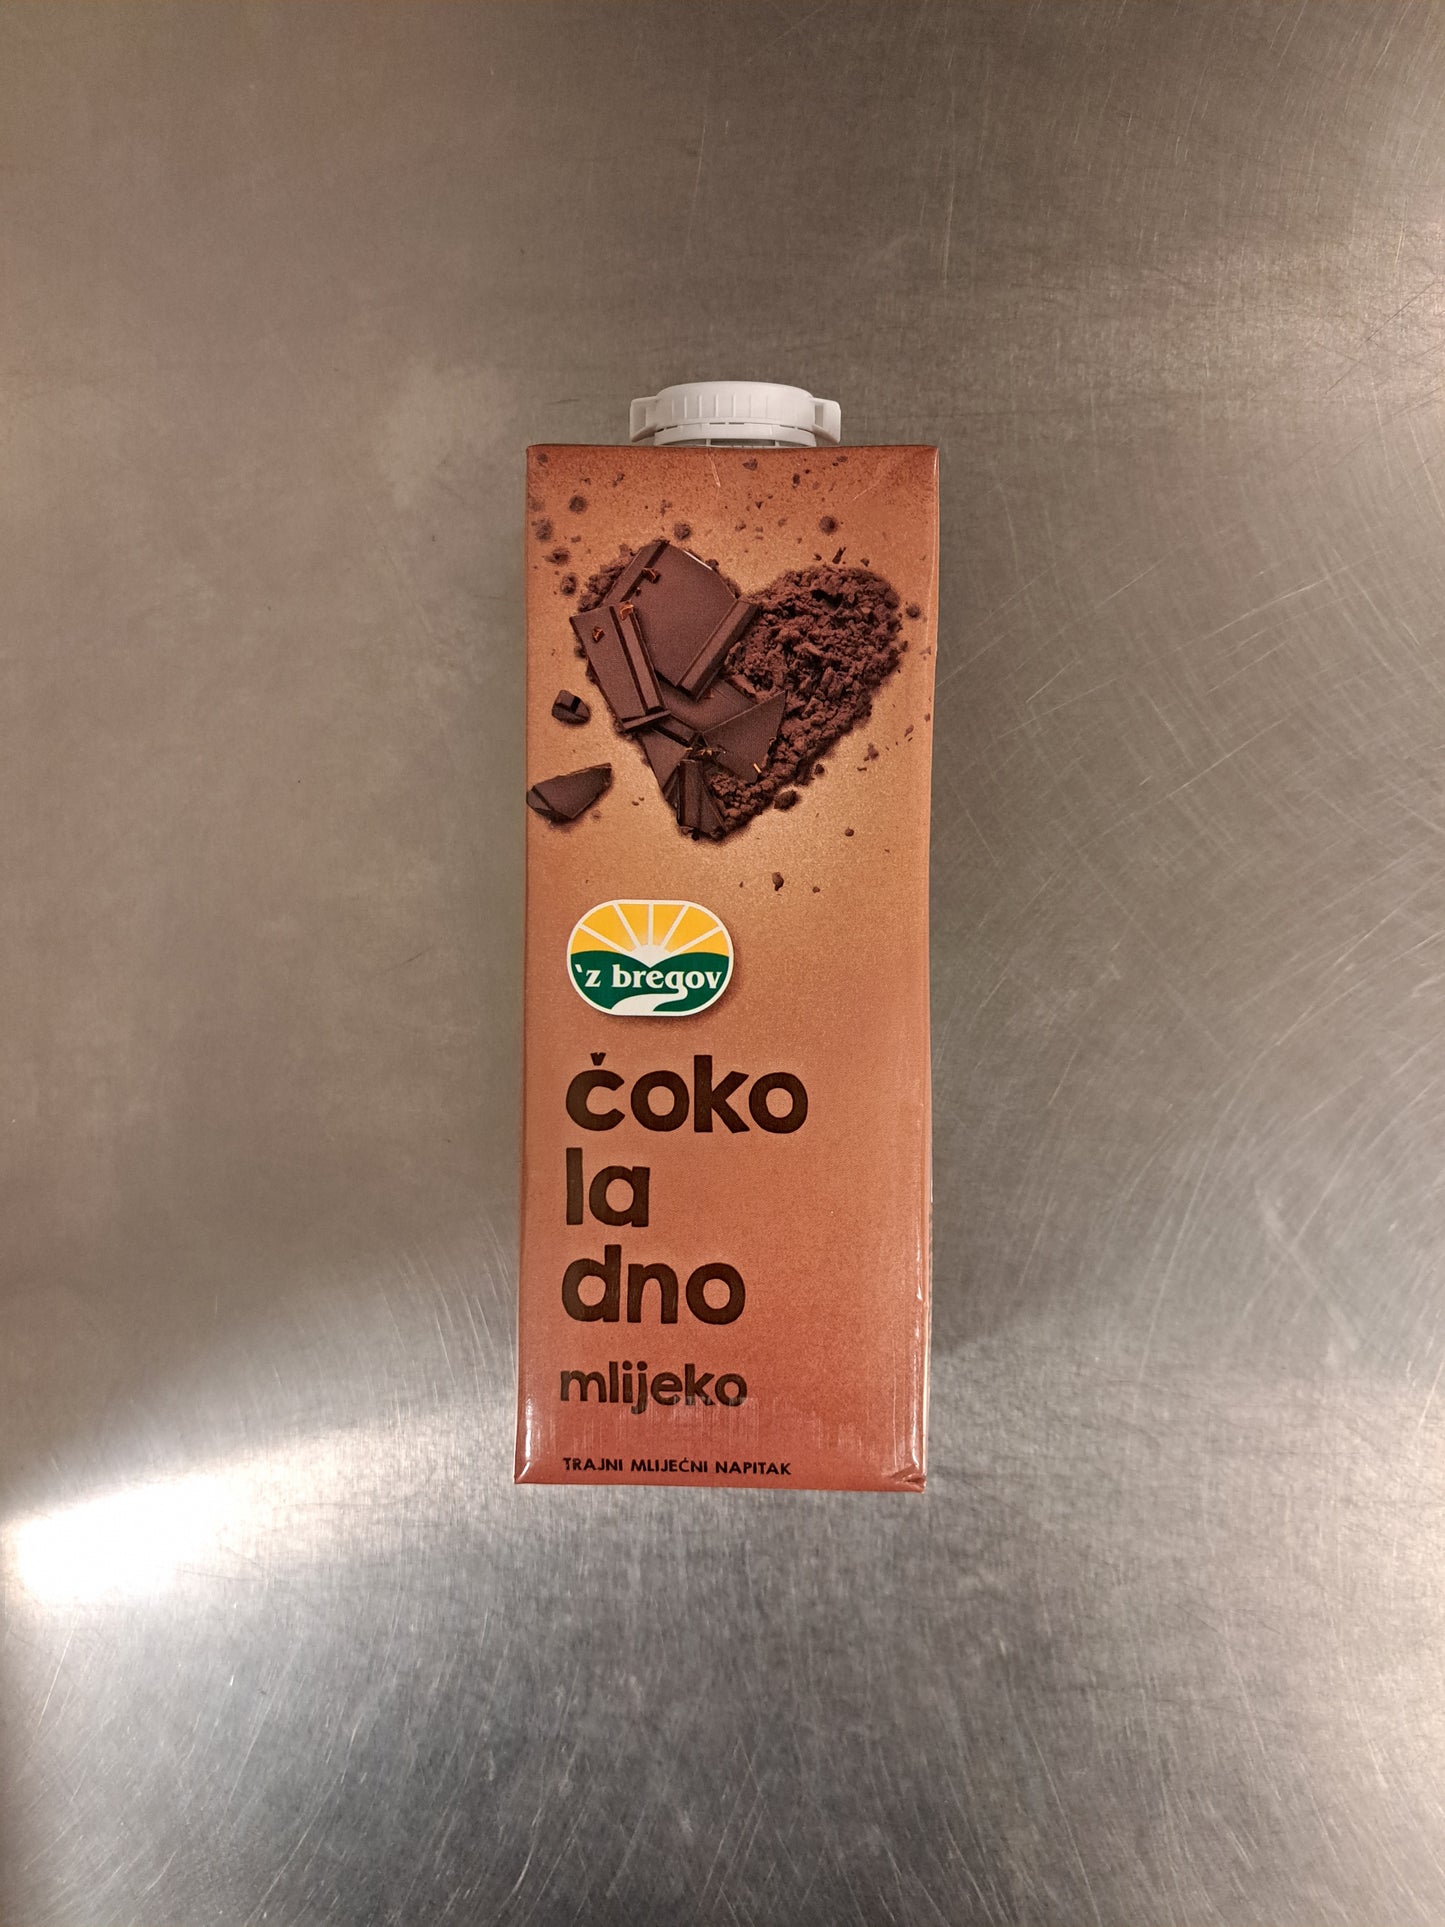 Z bregov Cokoladno mlijeko - Chokladmjölk 1L